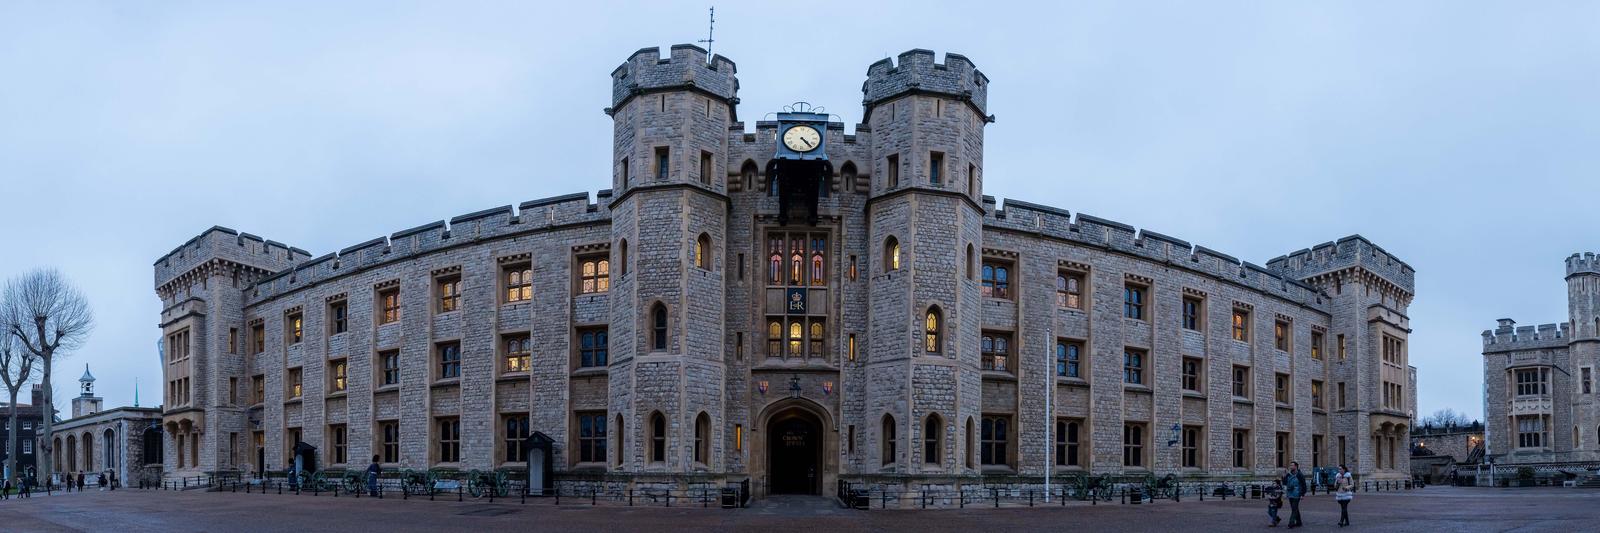 מצודת לונדון - מדריך מפורט לביקור במבנה המפורסם